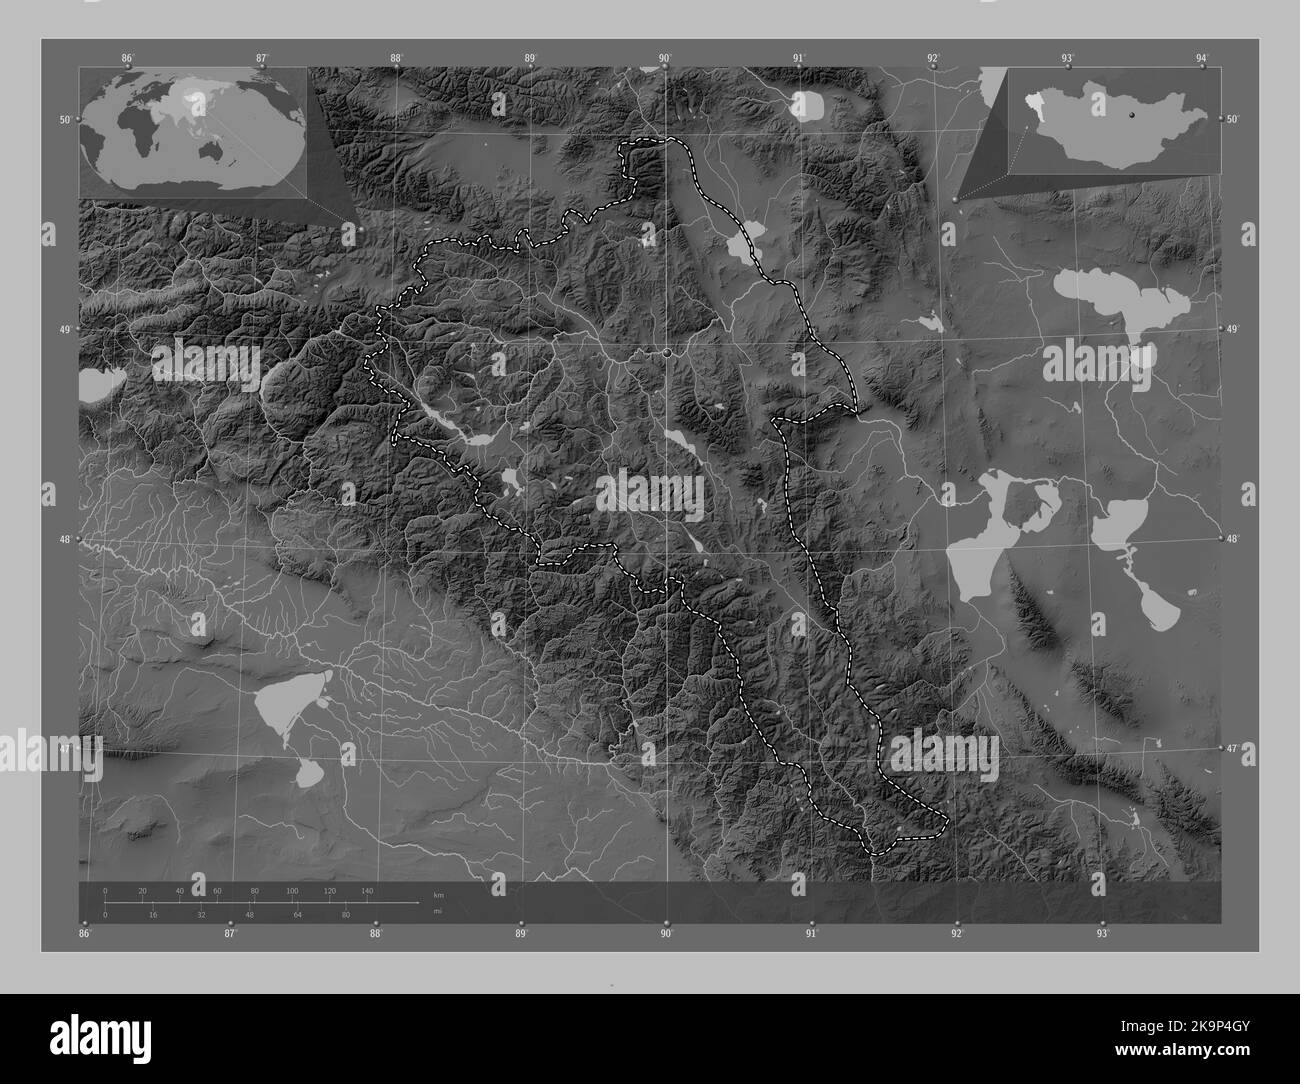 Bayan-Olgiy, provincia della Mongolia. Mappa in scala di grigi con laghi e fiumi. Posizioni delle principali città della regione. Posizione ausiliaria ad angolo m Foto Stock